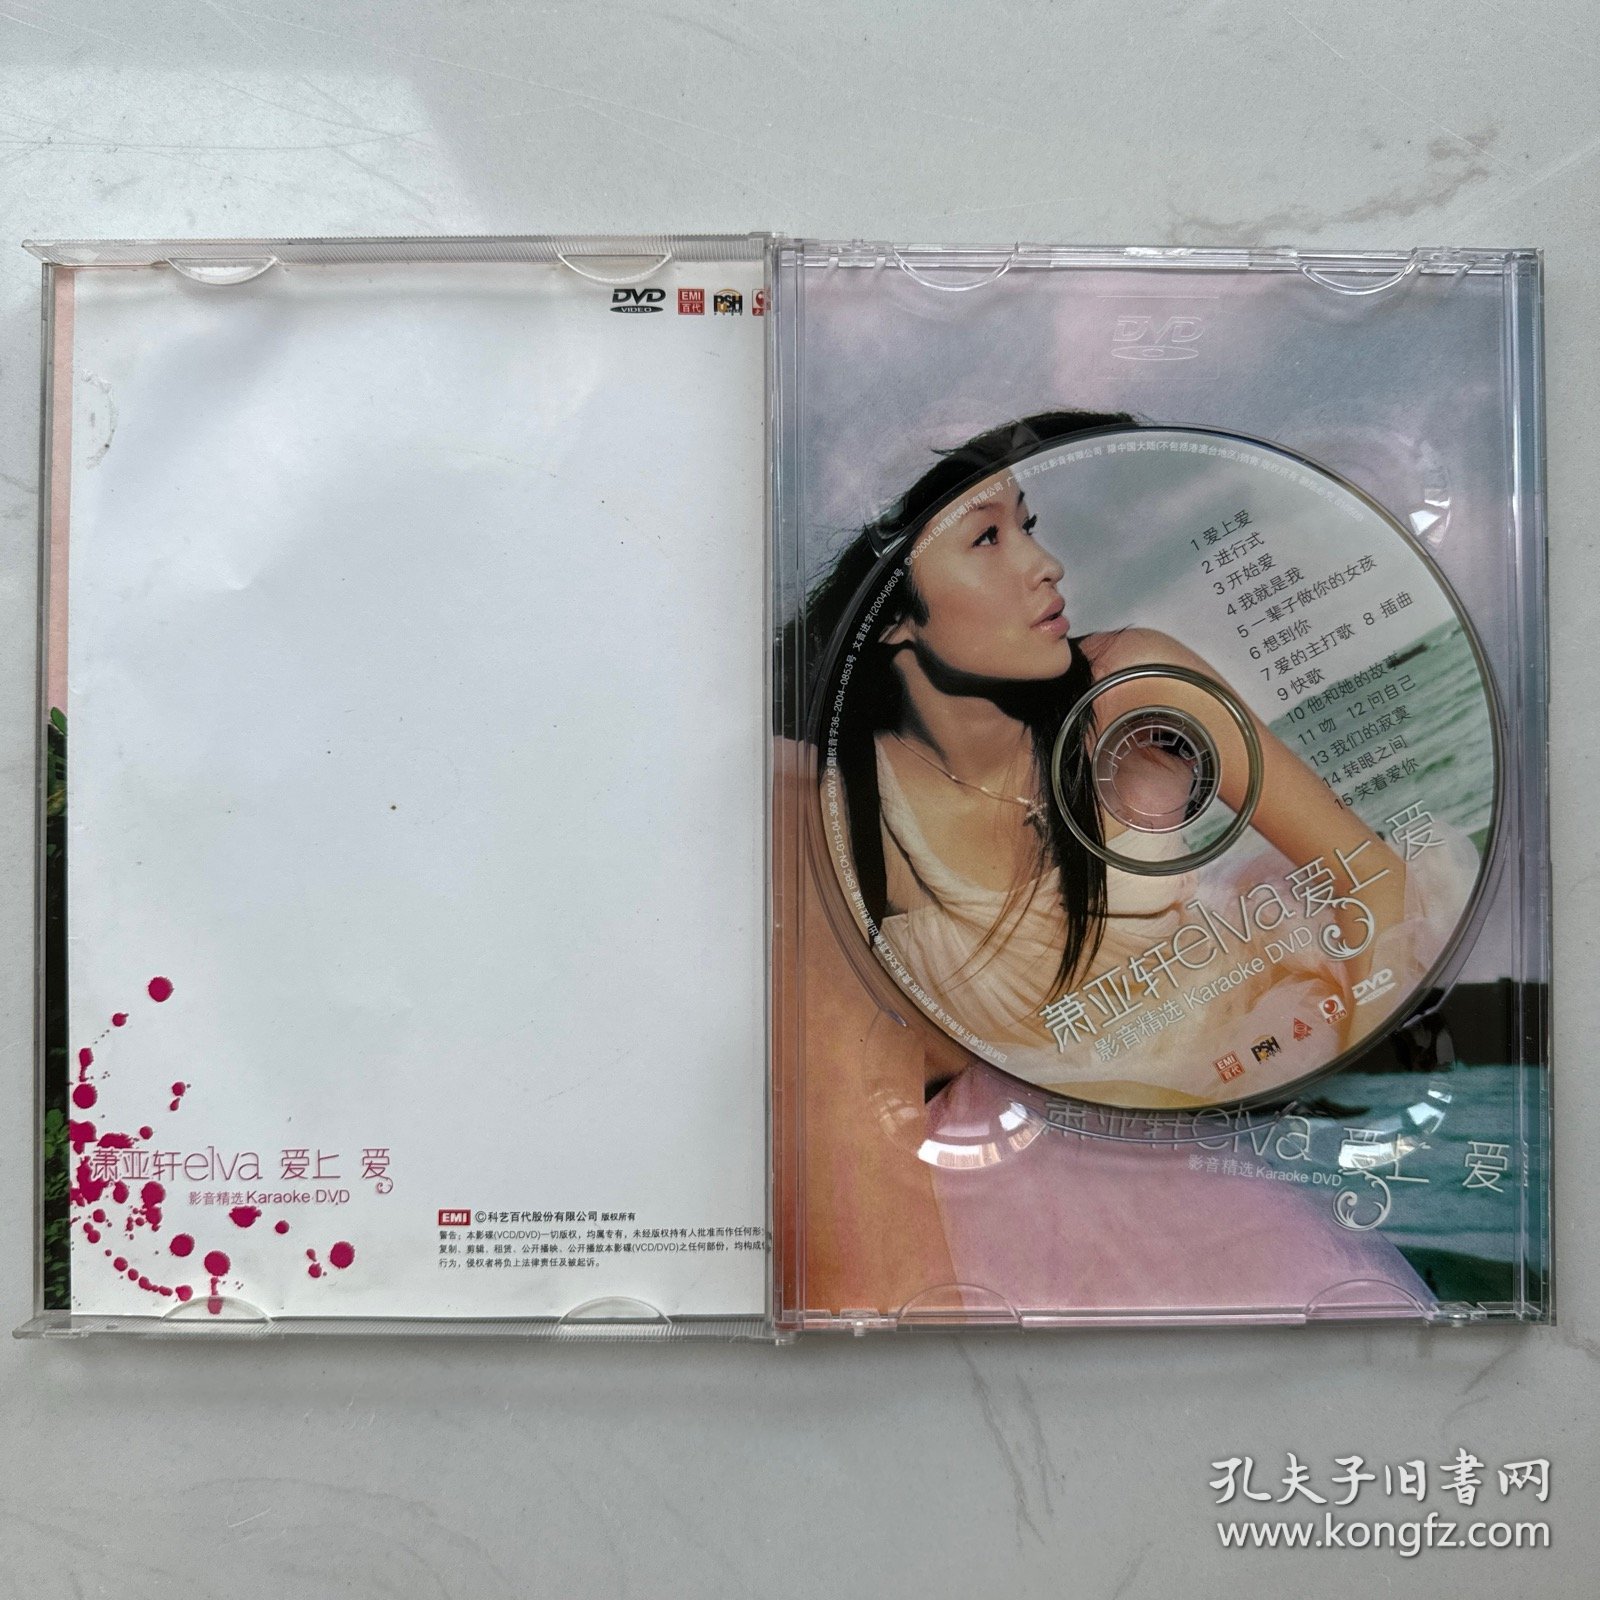 萧亚轩 爱上爱 卡拉OK DVD EMI提供版权 东方红影音正版发行